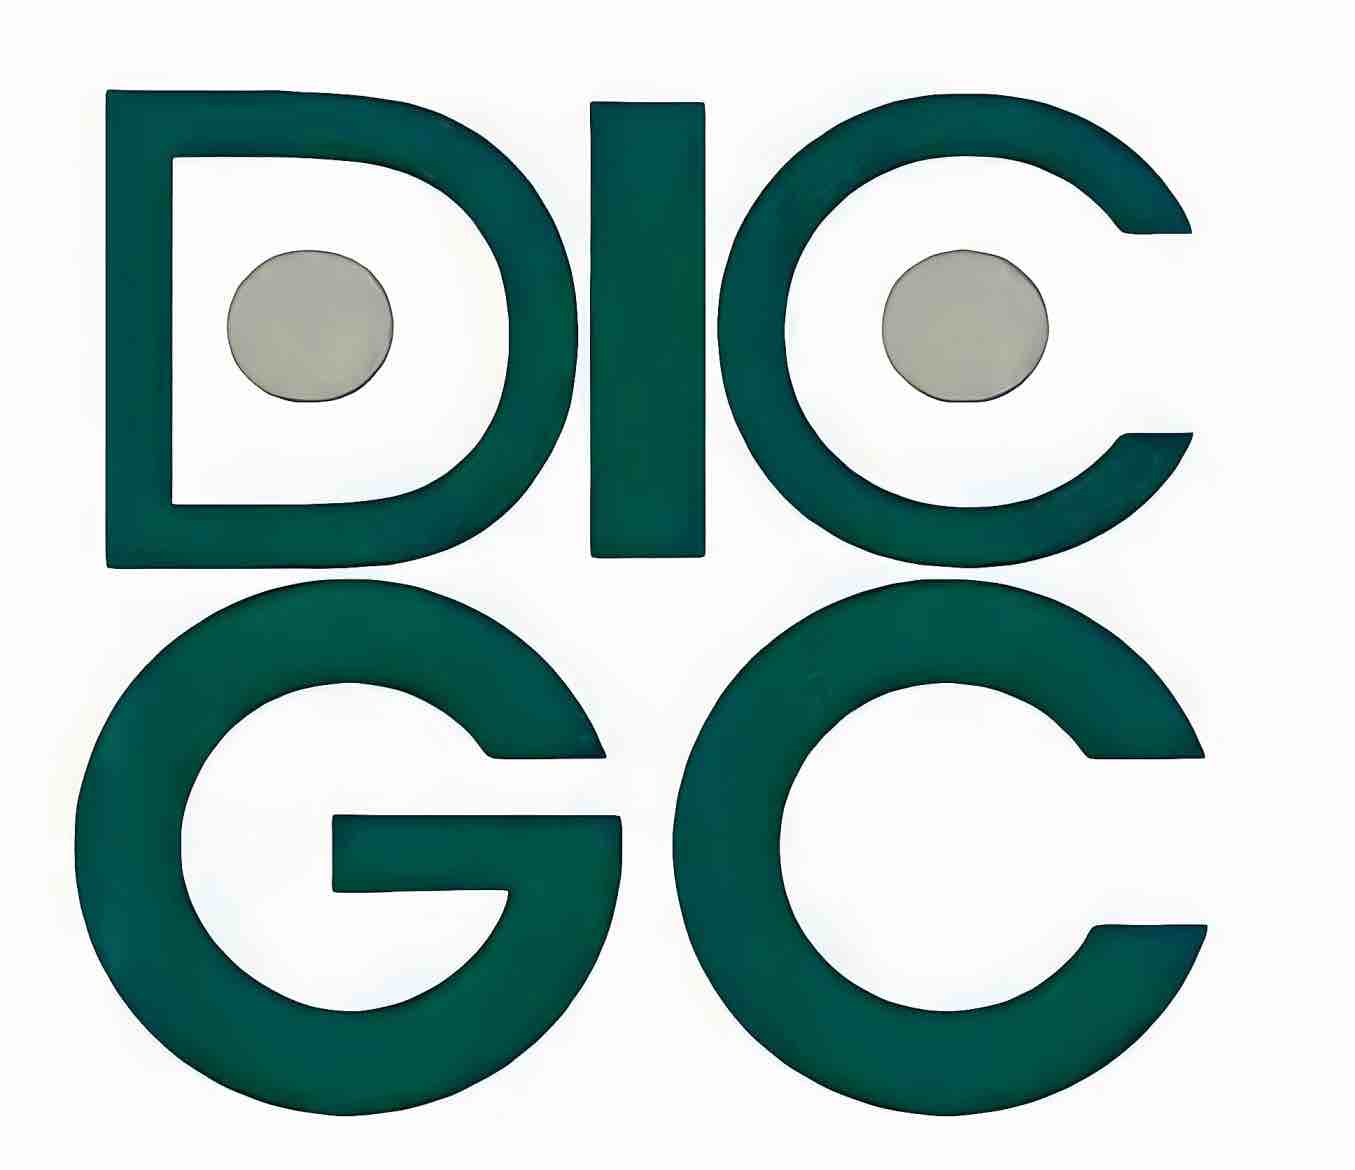 DICGC Logo Alt Text